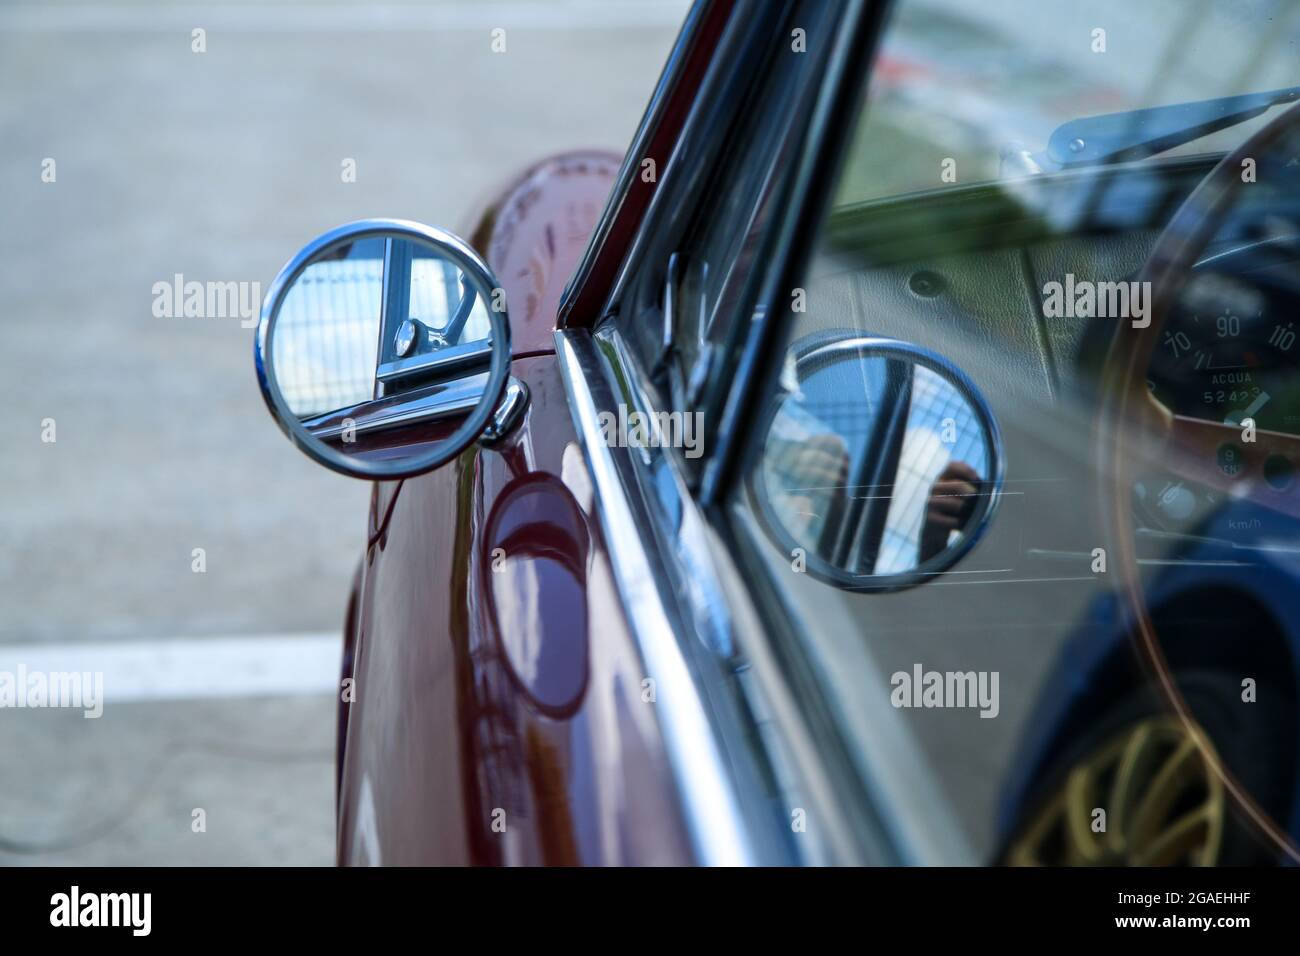 Das Detail des einfachen kleinen runden Seitenspiegels am klassischen italienischen Auto. Chrom und glänzend. Stockfoto